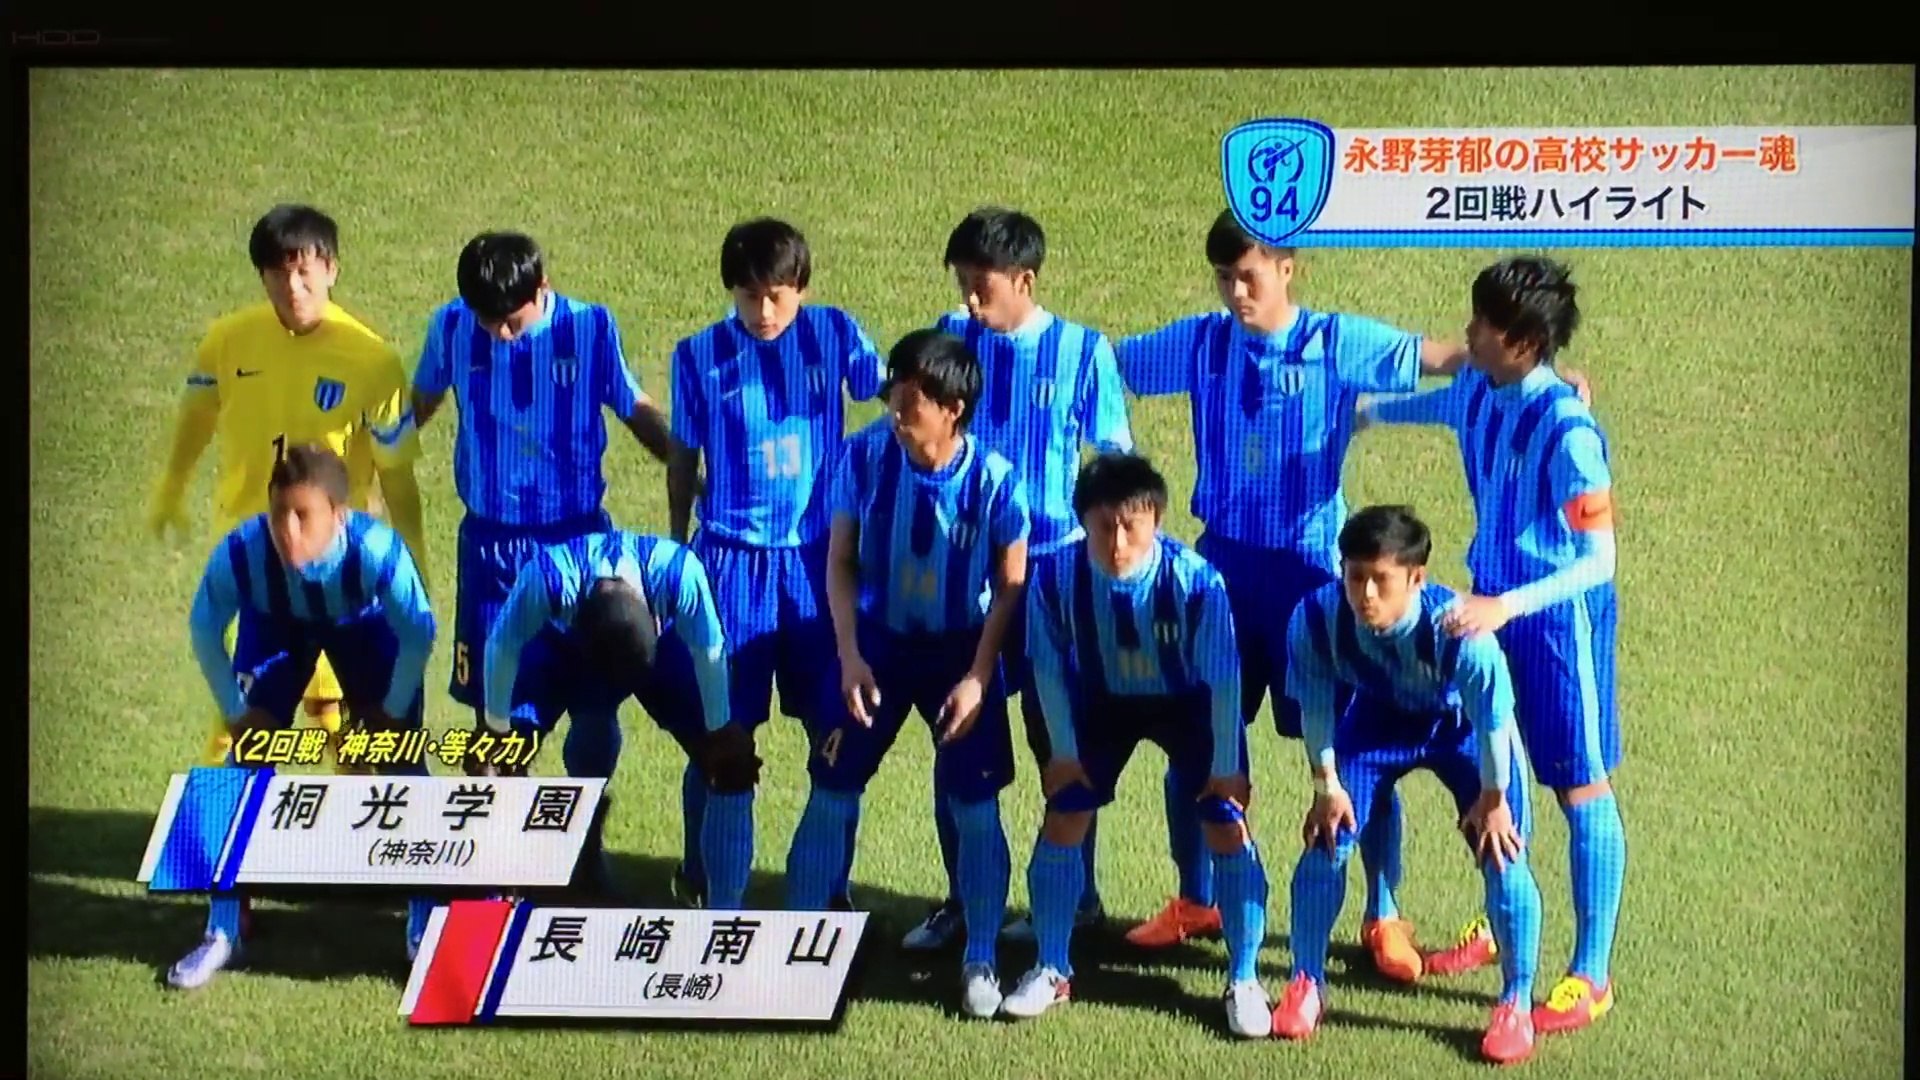 小川航基 高校サッカー2回戦スーパーゴール 動画 Dailymotion